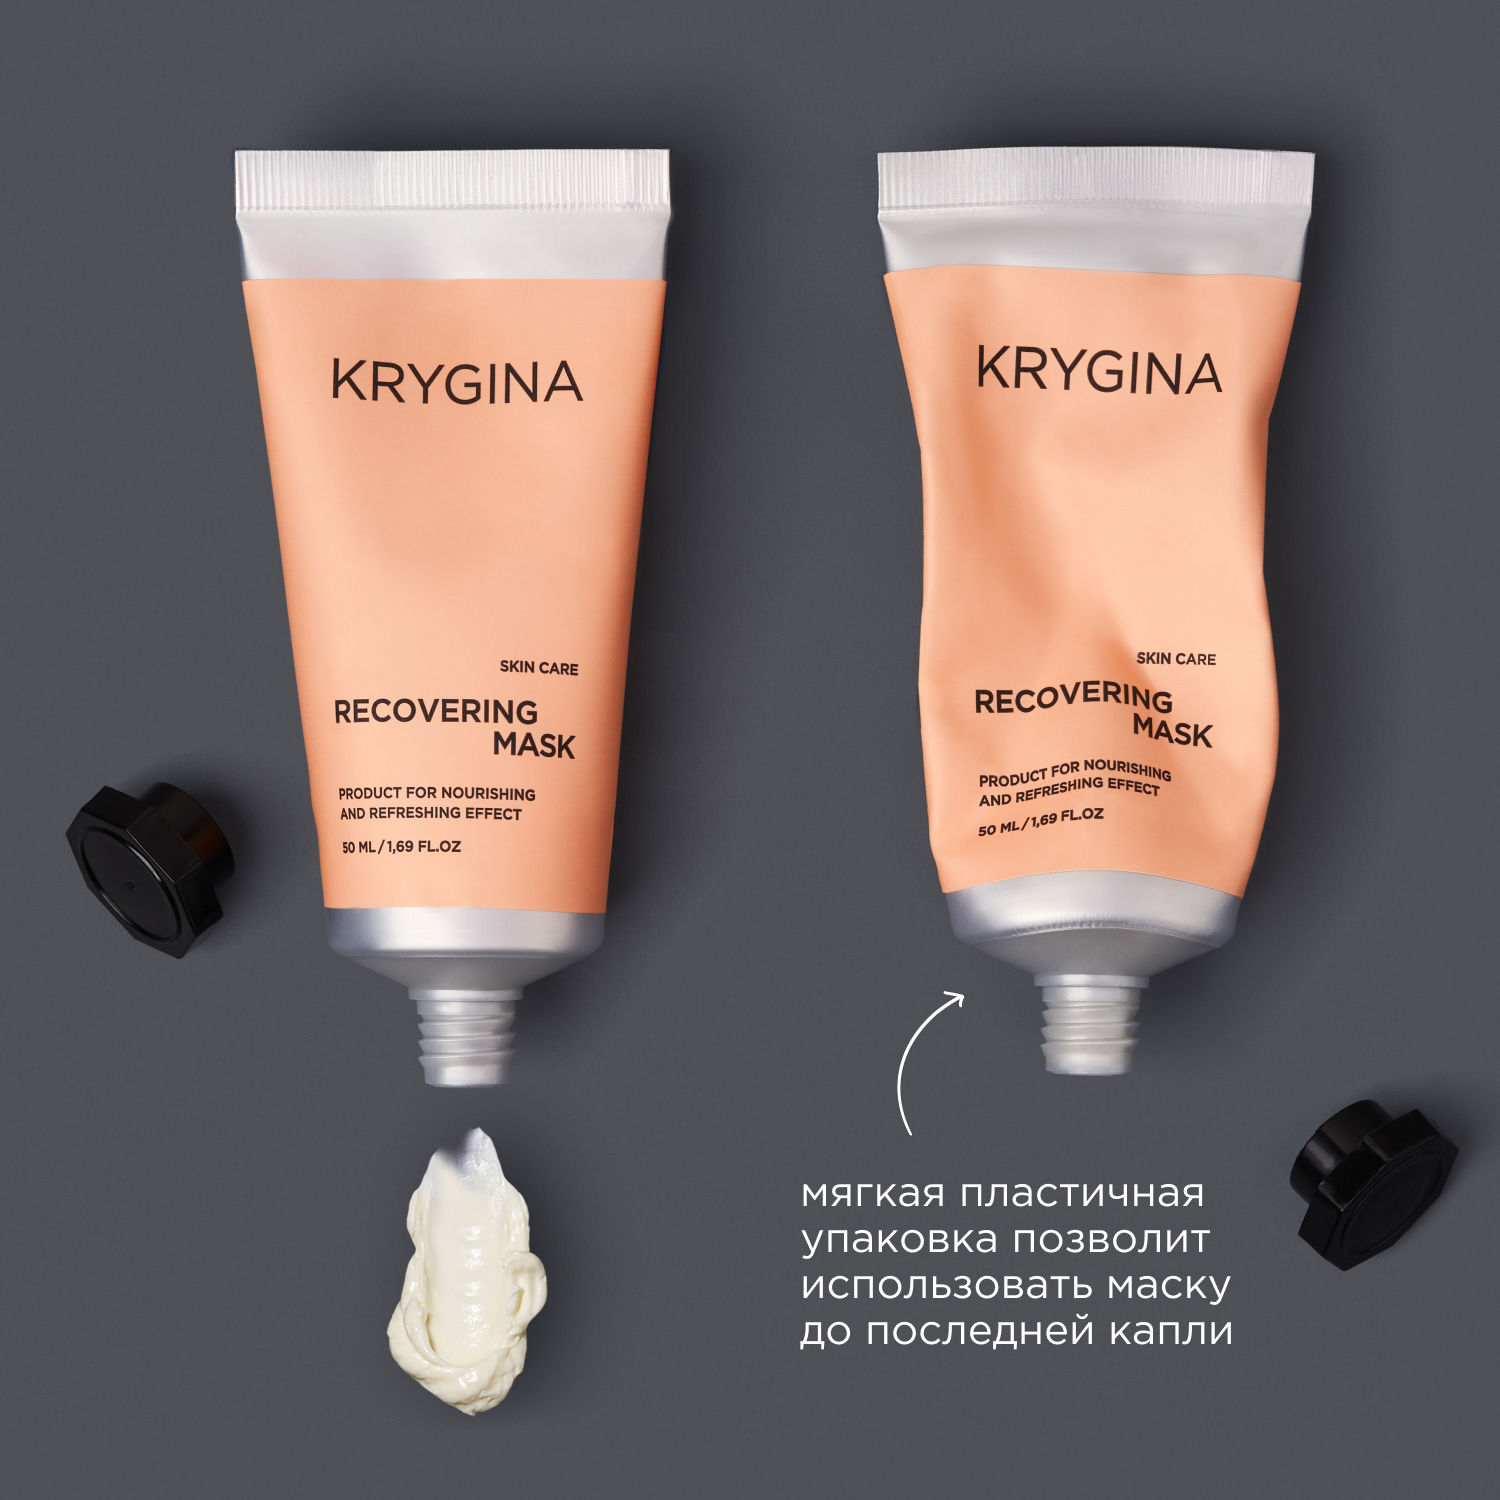 KRYGINA cosmetics Освежающая SOS-маска для мгновенного преображения кожи RECOVERING MASK, 50 мл